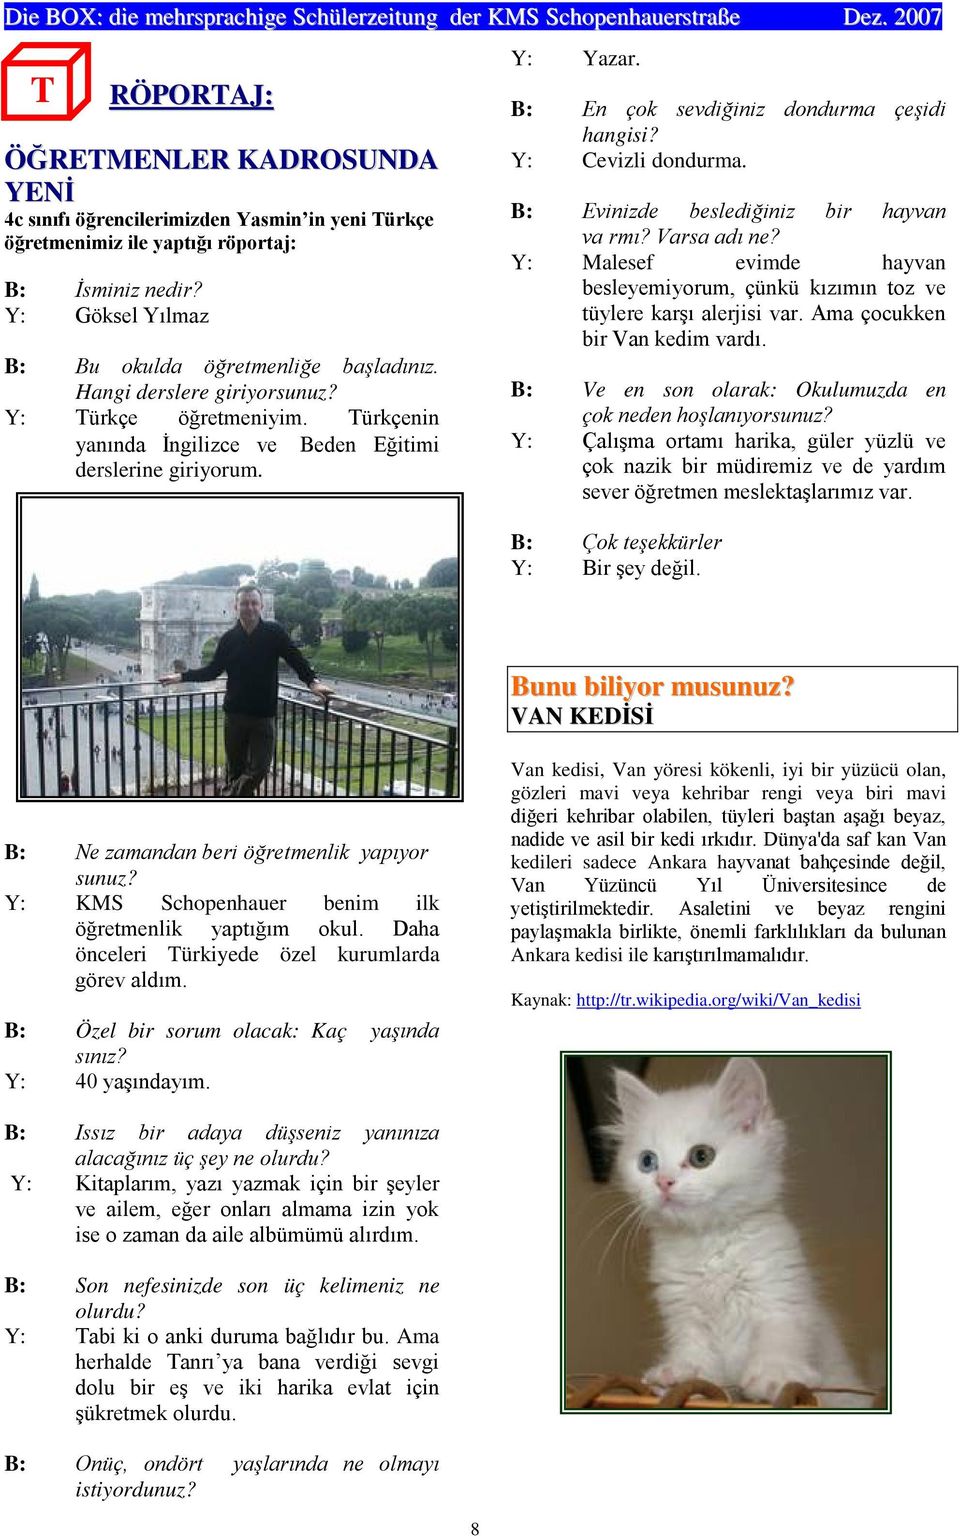 Y: KMS Schopenhauer benim ilk önceleri Türkiyede özel kurumlarda B: Özel bir sorum olacak: Kaç ya Y: Van kedisi, Van yöresi kökenli, iyi bir yüzücü olan,